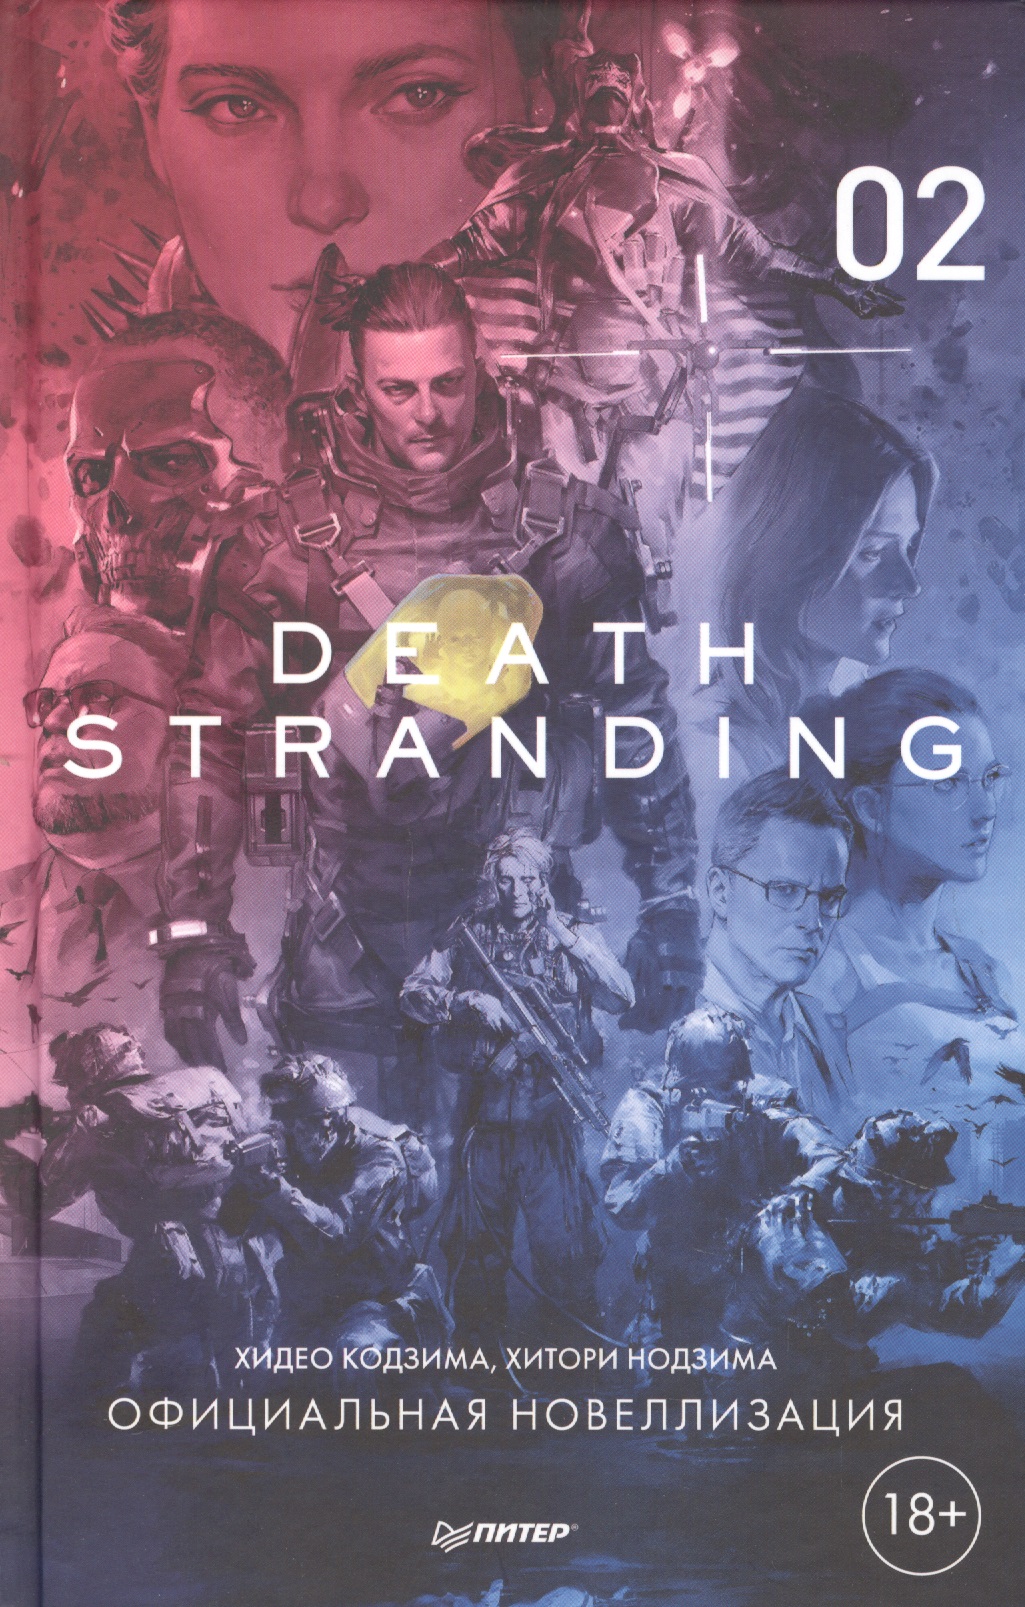 хидео кодзима death stranding часть 1 официальная новеллизация Кодзима Хидео, Кодзима Хироко Death Stranding. Часть 2